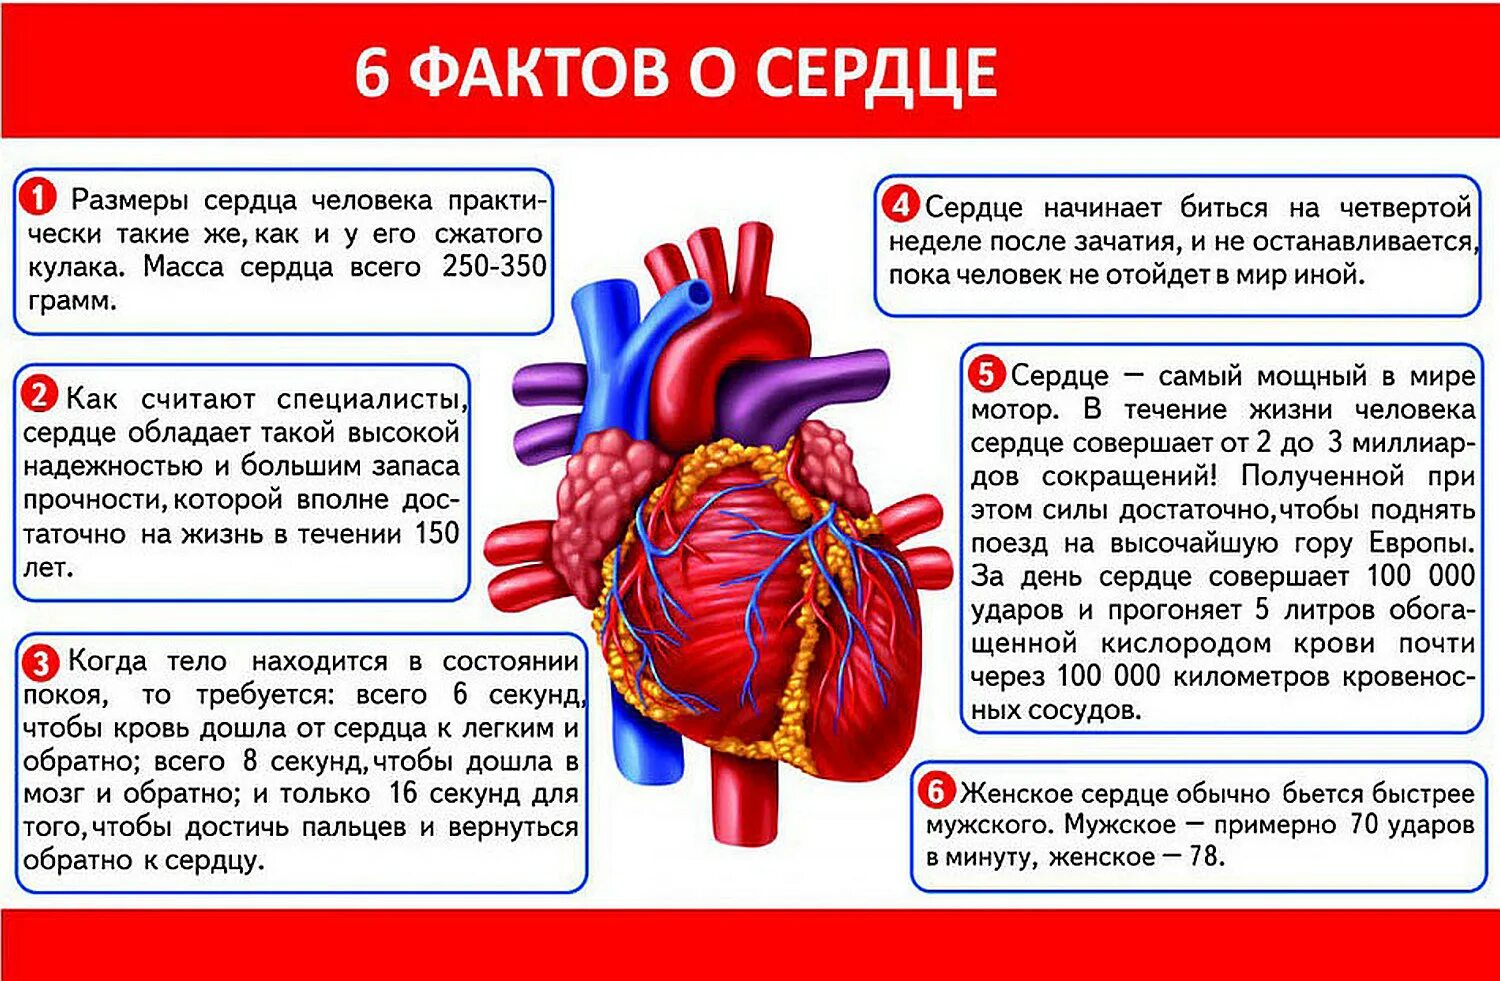 Органы чувств сердце. Интересные факты о сердце. Интересные факты о сердце человека. Интересные факты о работе сердца человека. Факты о строении и работе сердца человека.